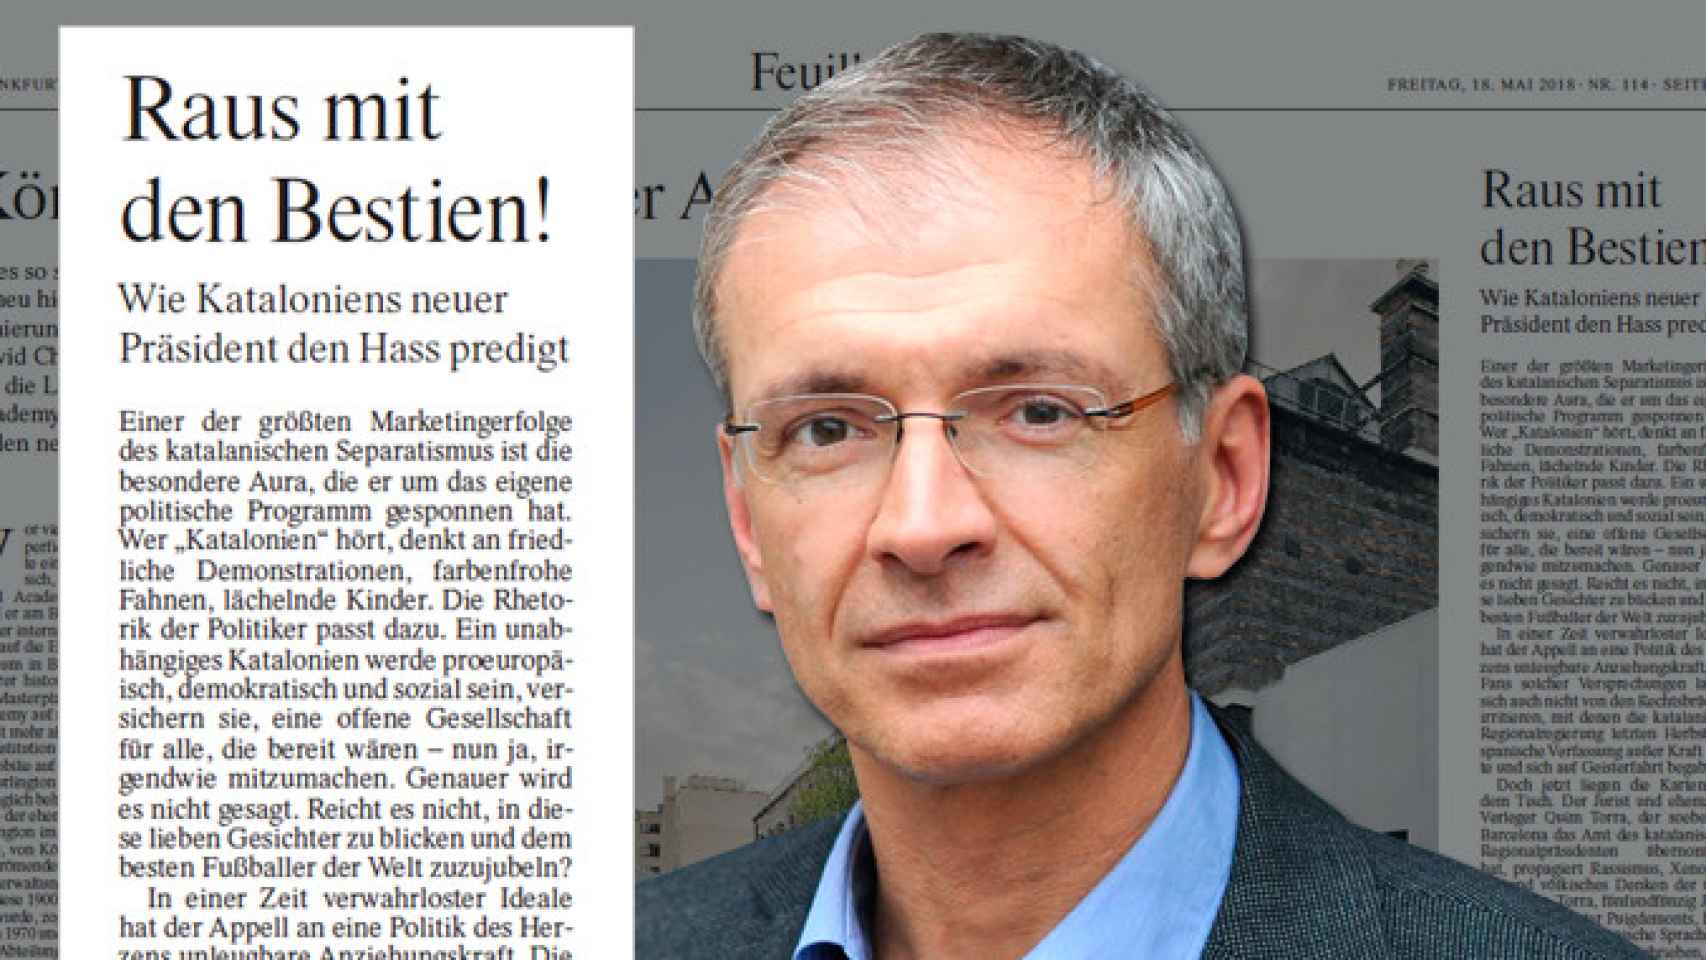 Paul Ingendaay, el autor del artículo 'Fuera con las bestias' publicado en el periódico alemán Frankfurter Allgemeine Zeitung / CG